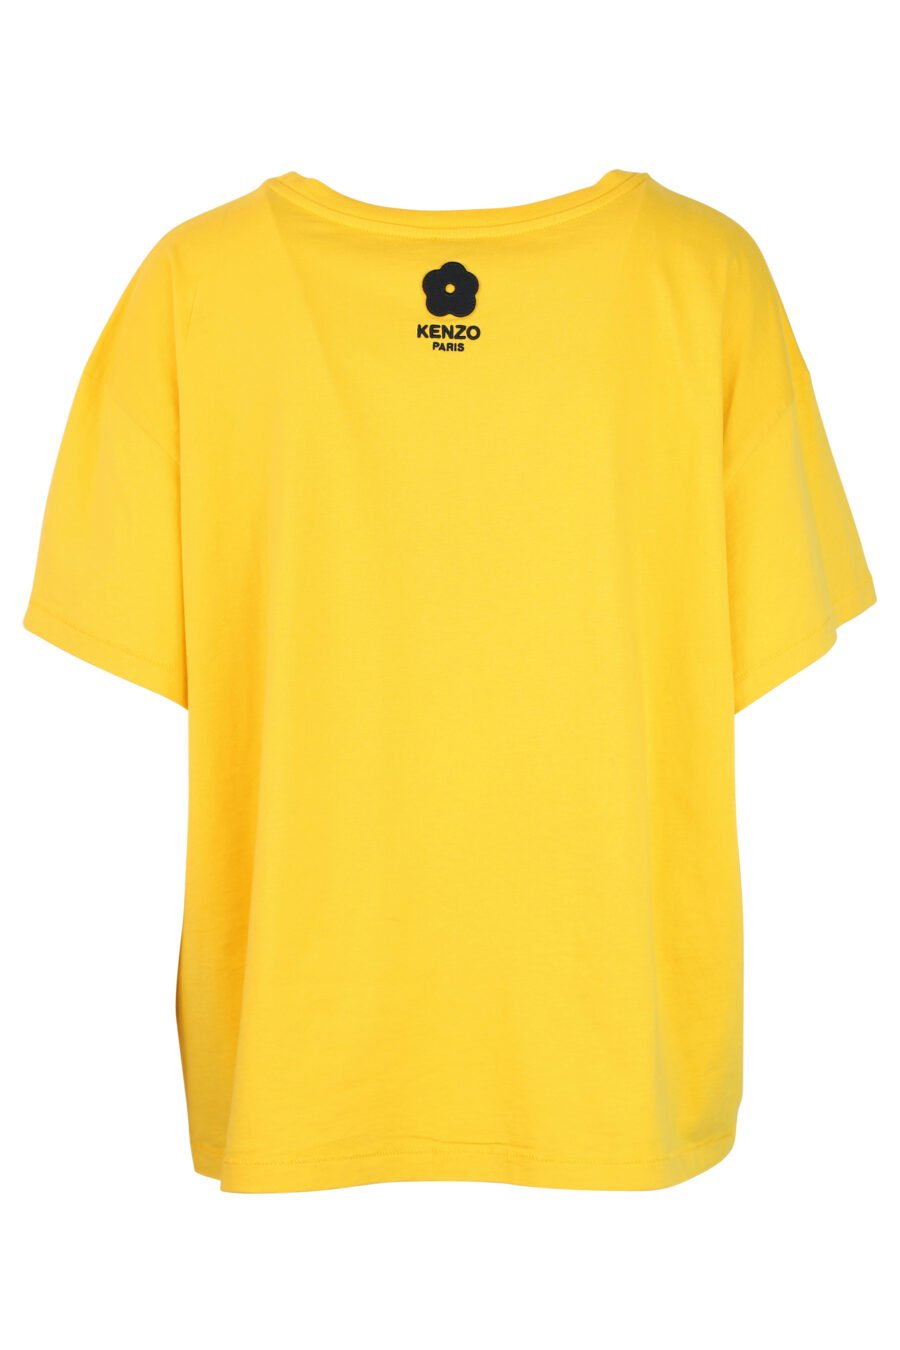 T-shirt amarela com maxilogo de elefante - 3612230460065 2